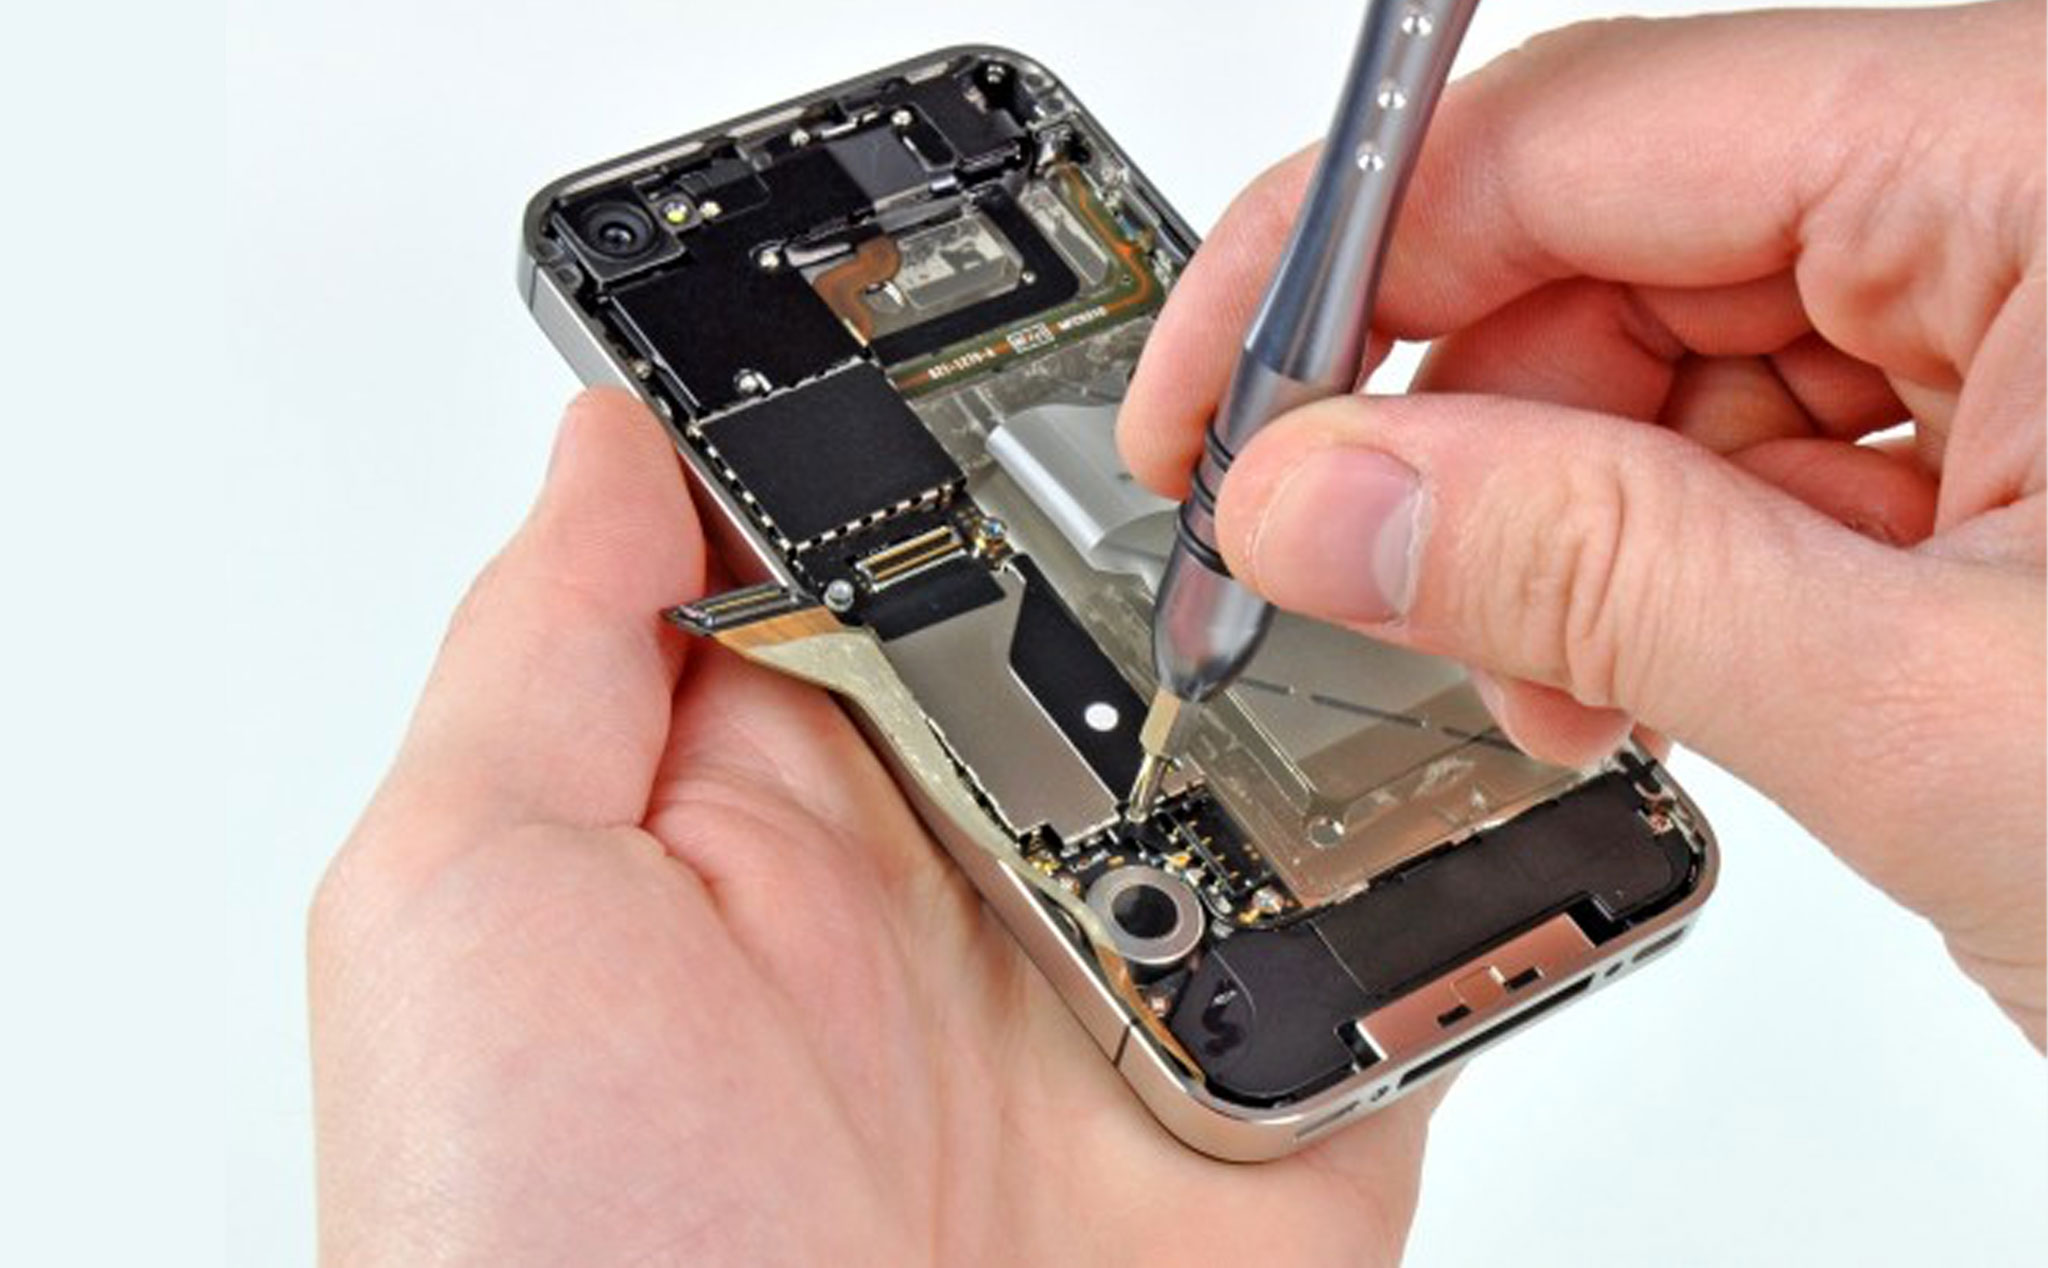 Pin iPhone 7, iPhone 7 Plus bao nhiêu mAh? Xem giải đáp ngay tại đây